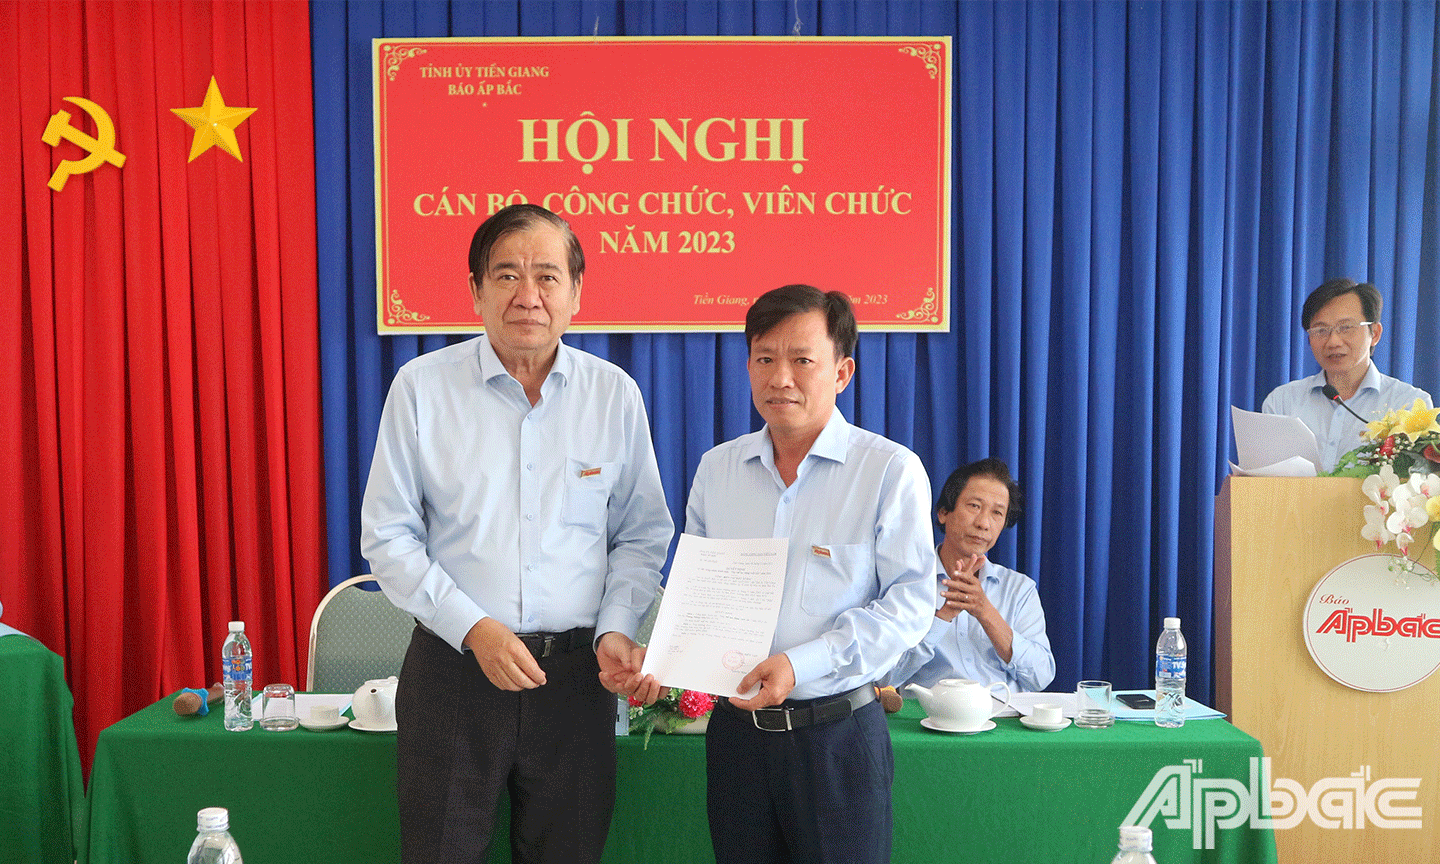 Đồng chí Nguyễn Minh Tân, Tổng Biên tập Báo Ấp Bắc trao Quyết định công nhận danh hiệu “Tập thể lao động xuất sắc” năm 2022 cho tập thể Phòng Phóng viên